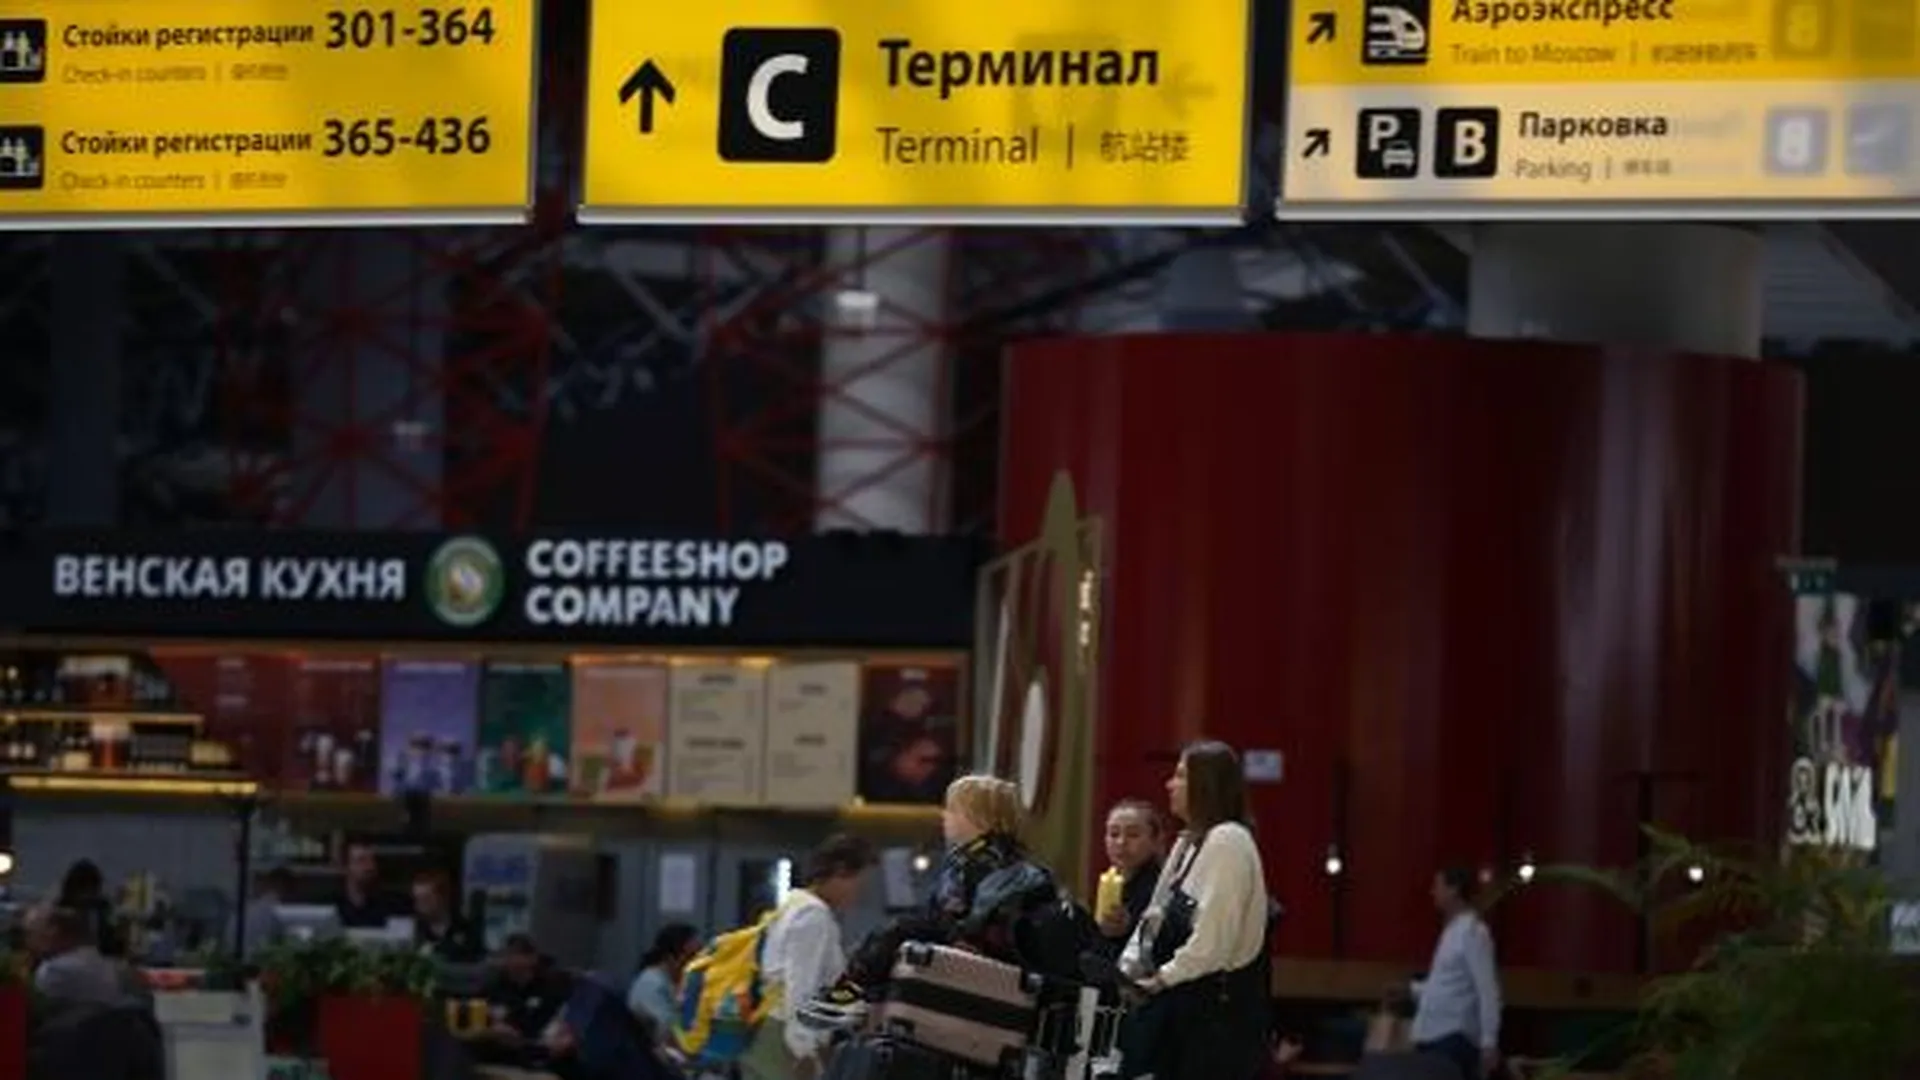 Очередь в аэропорту Шереметьево образовалась из-за зажигалки в виде гранаты